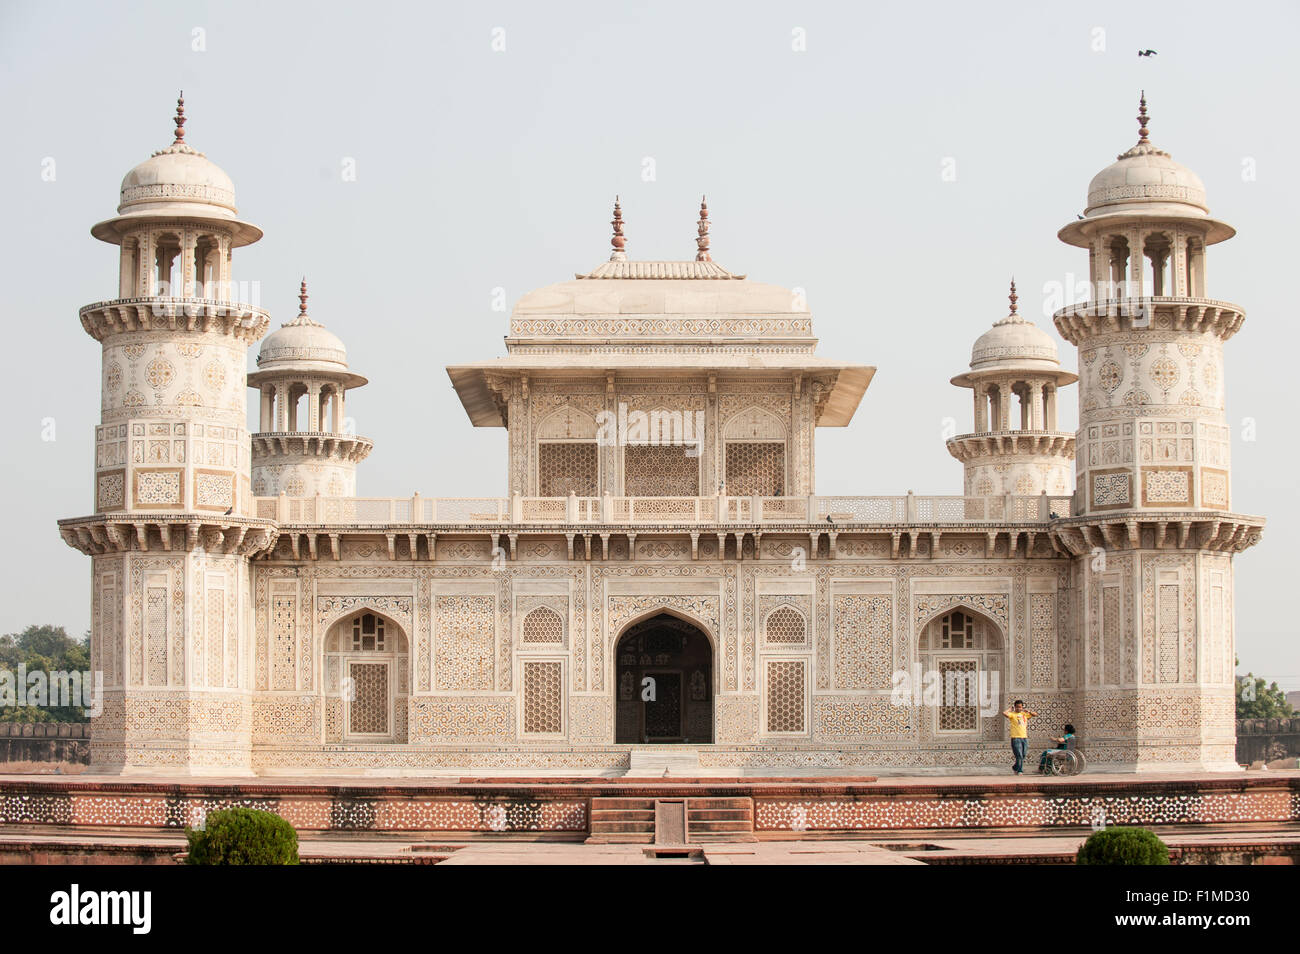 Agra, Utar Pradesh, India. Baby Taj. Impresionante arquitectura con finamente detallado kari parchin incrustaciones de piedras semi-preciosas y perforó el trabajo lattice jali pantallas tallado en mármol blanco. Foto de stock